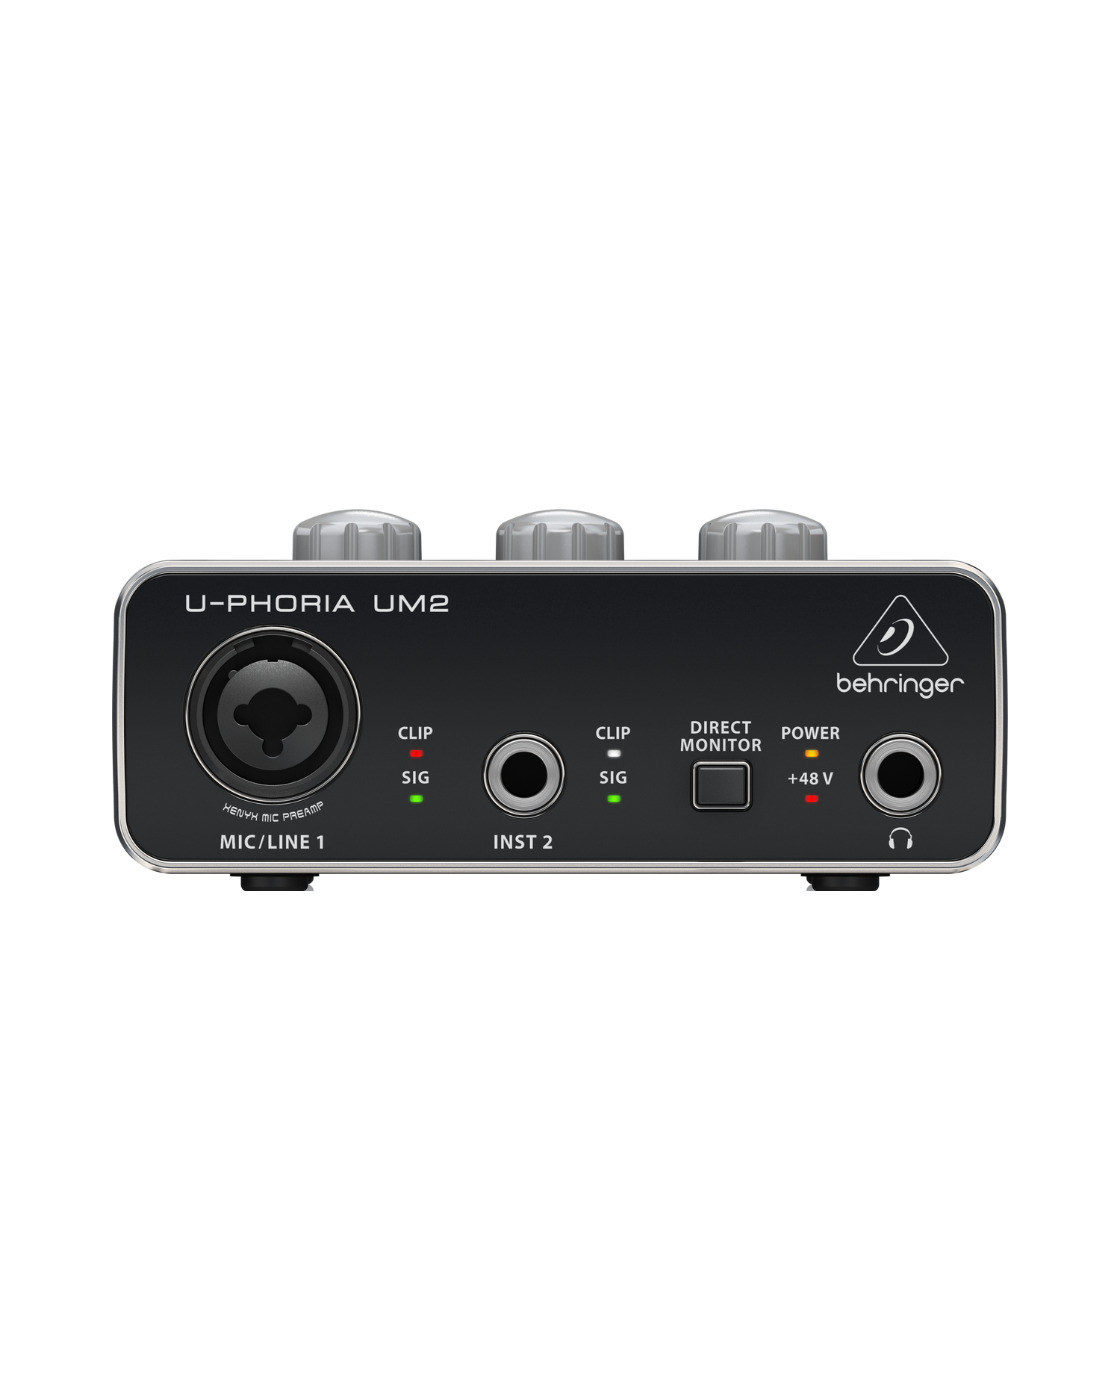 Behringer U-Phoria UM2 2 x 2 Audio Interface With USB 2.0